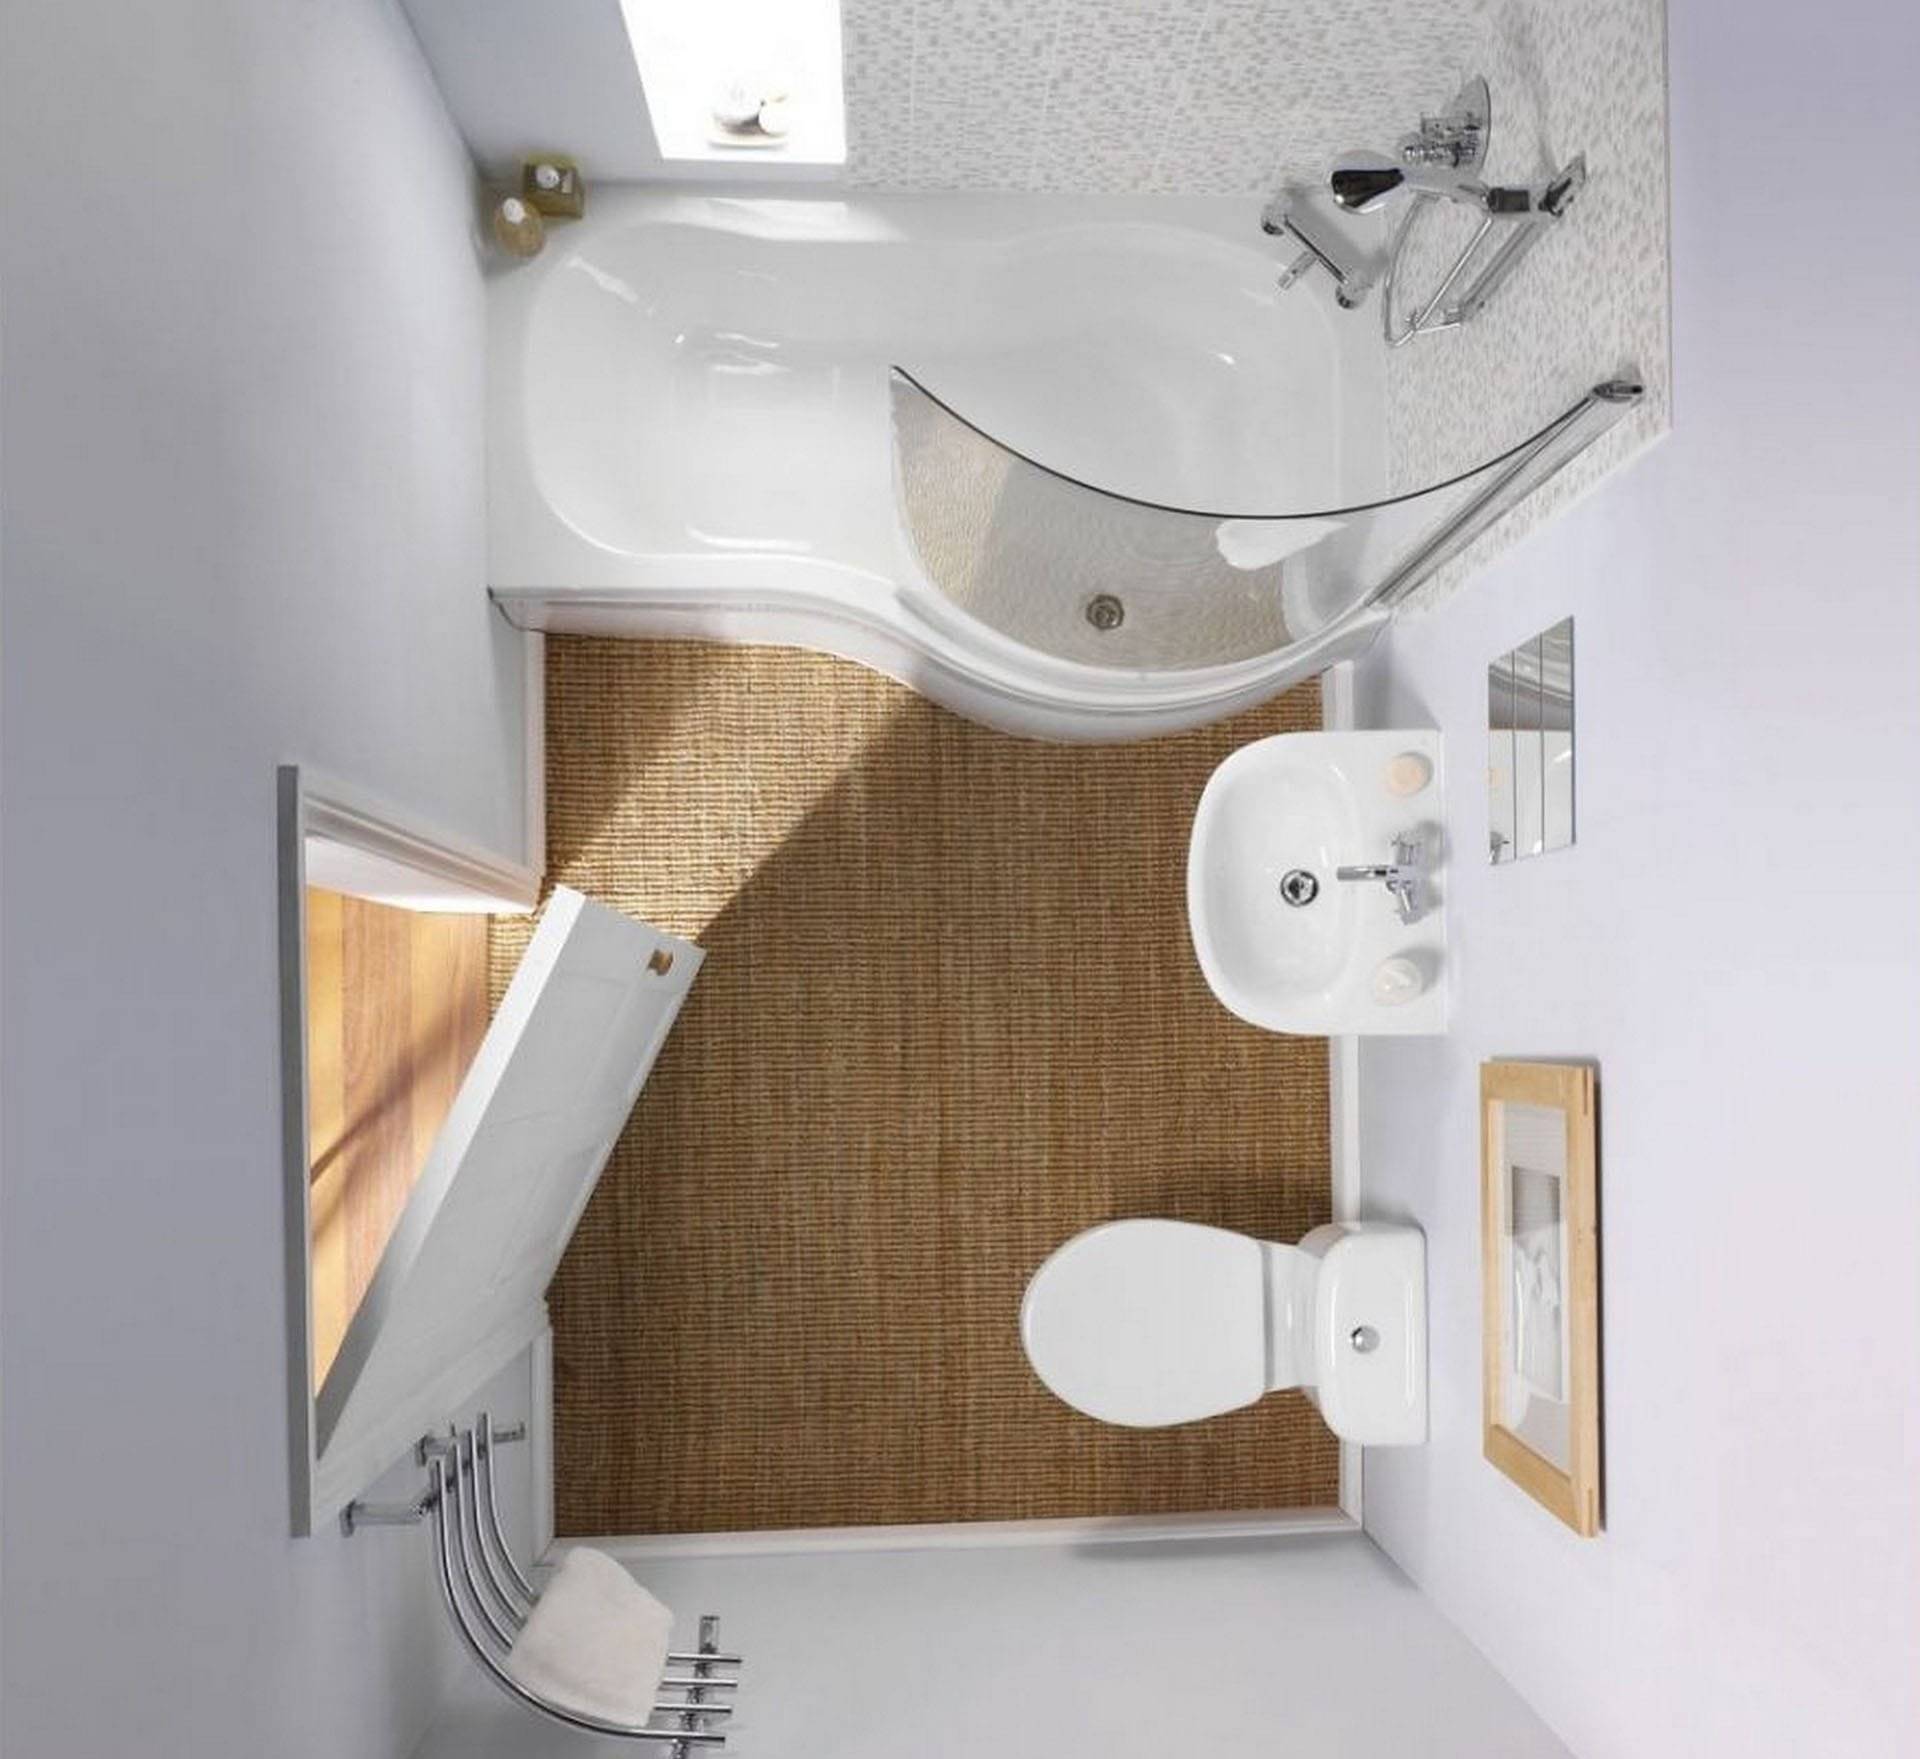 Дизайн и планировка интерьера ванной комнаты площадью 3 м²